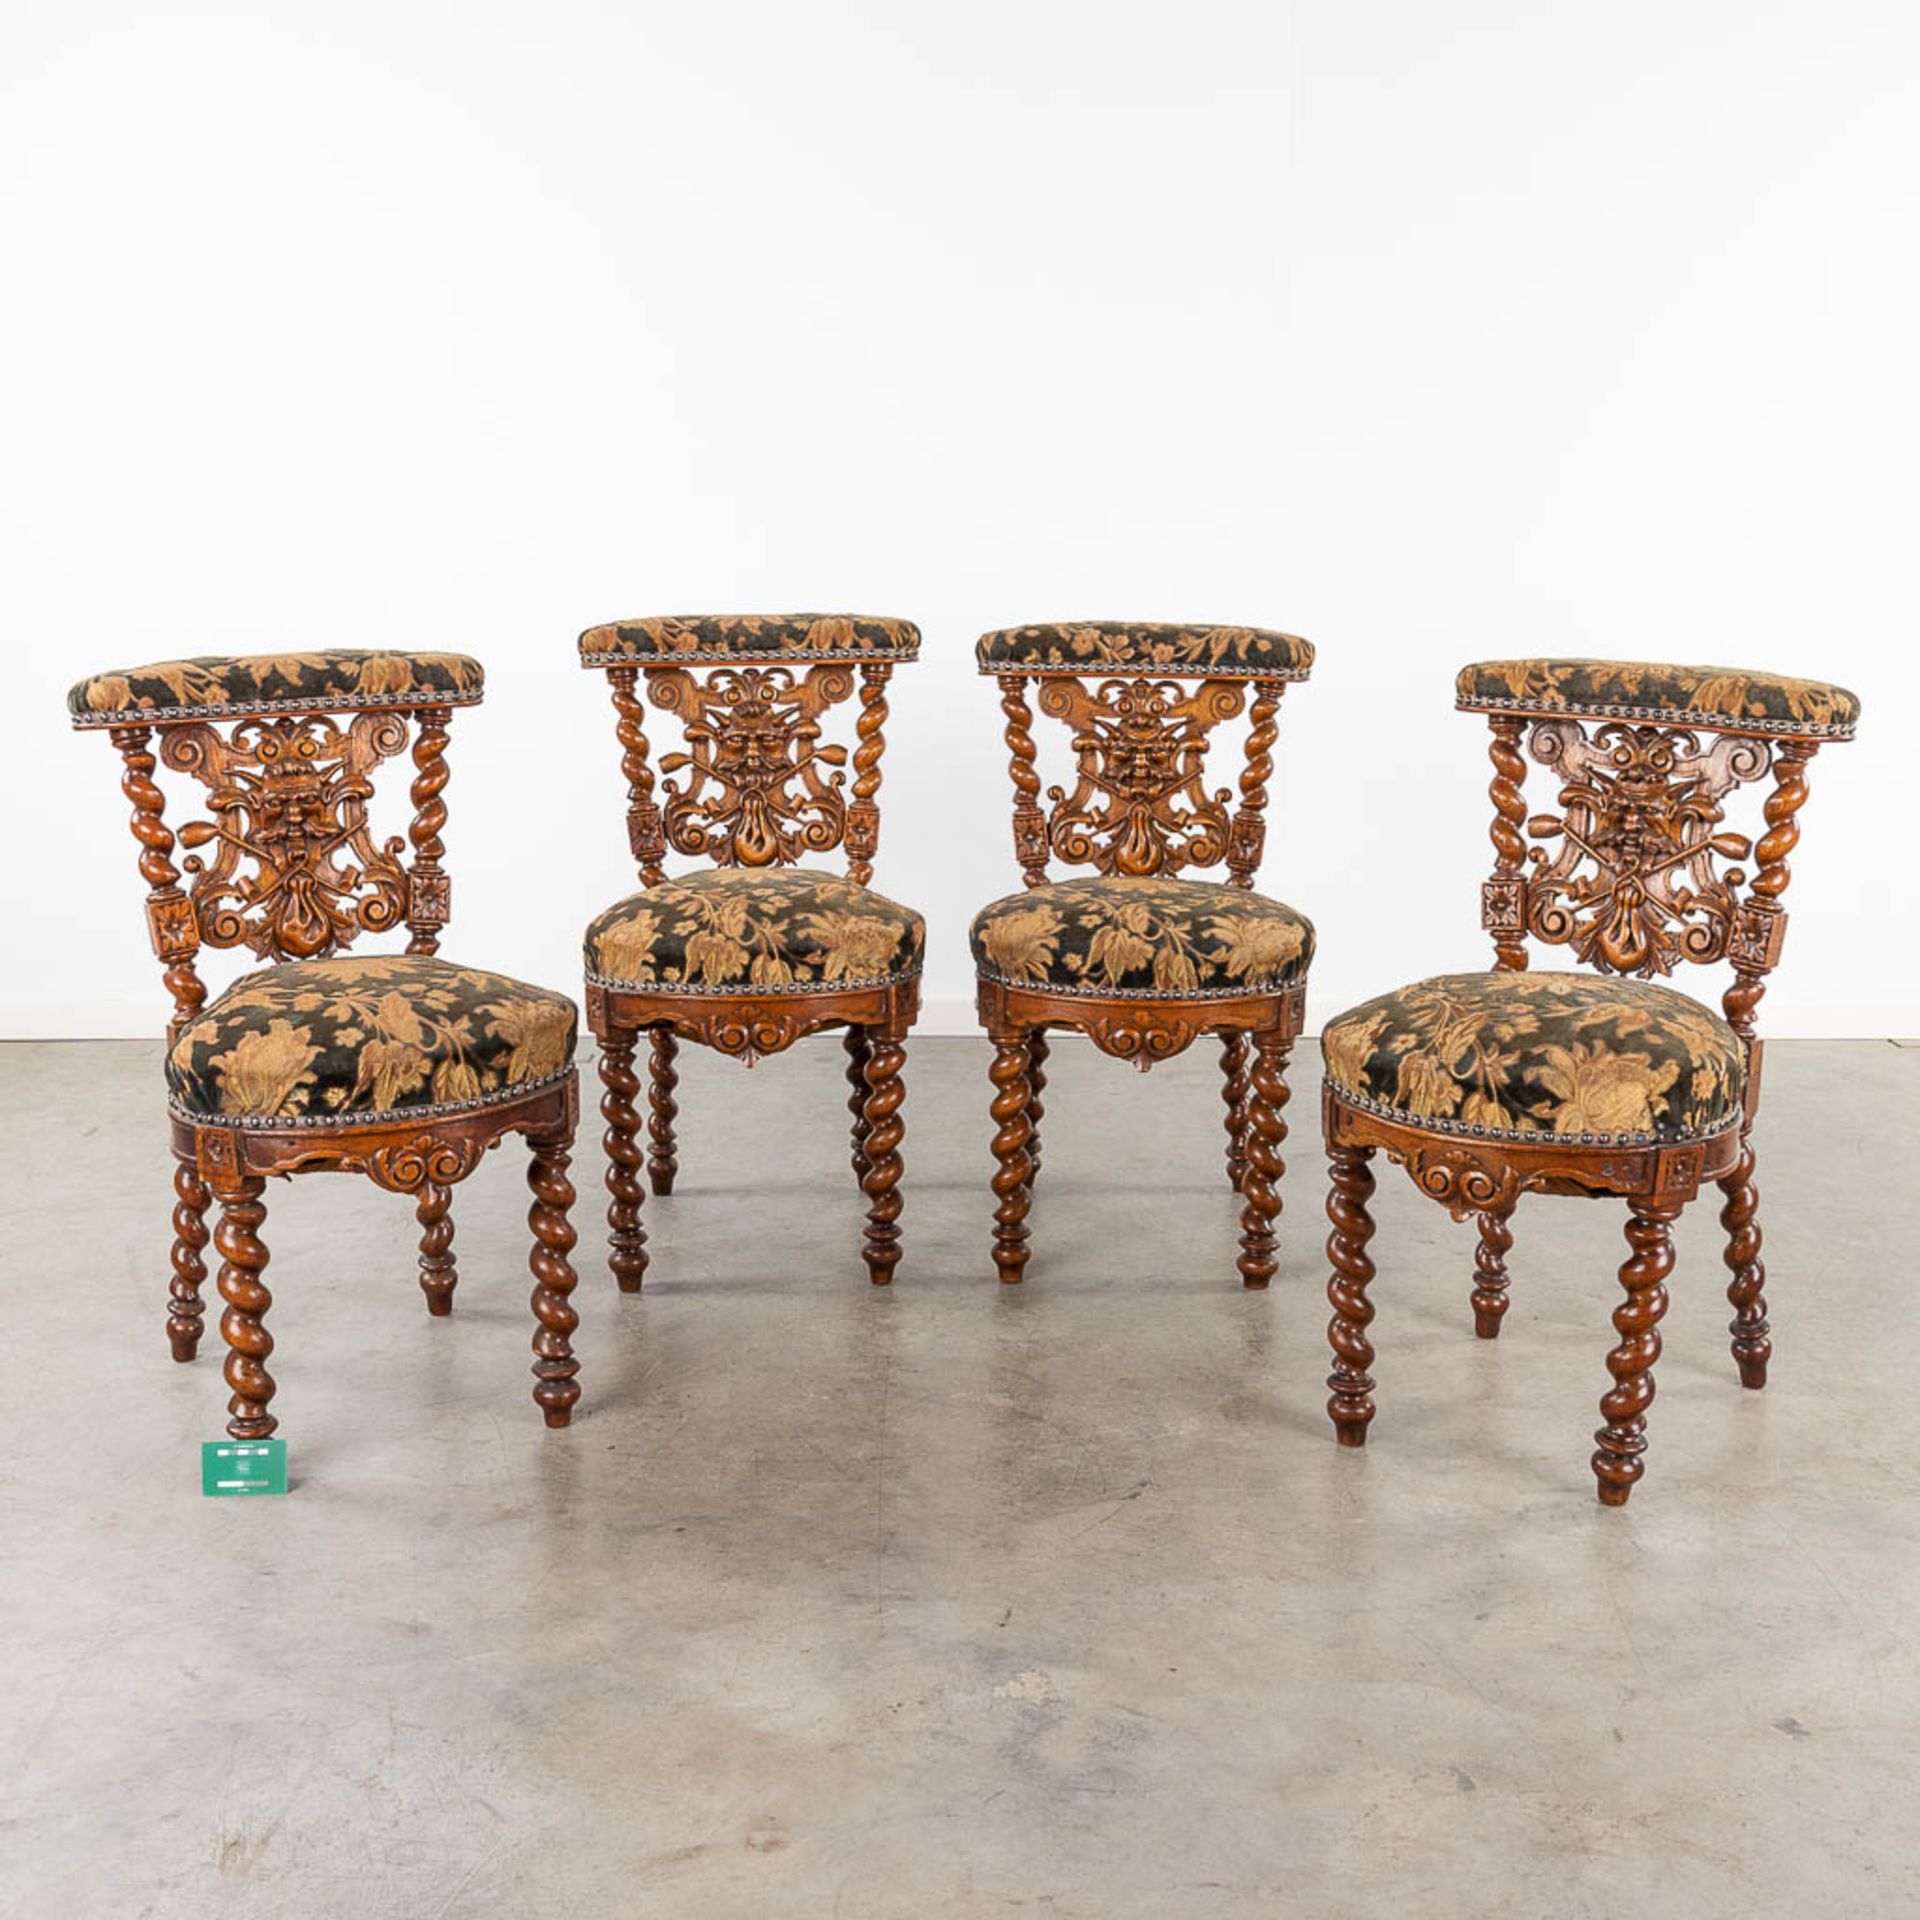 A set of 4 antique wood-sculptured smoker's chairs, oak. Circa 1900. (L:55 x W:44 x H:80 cm) - Bild 2 aus 15